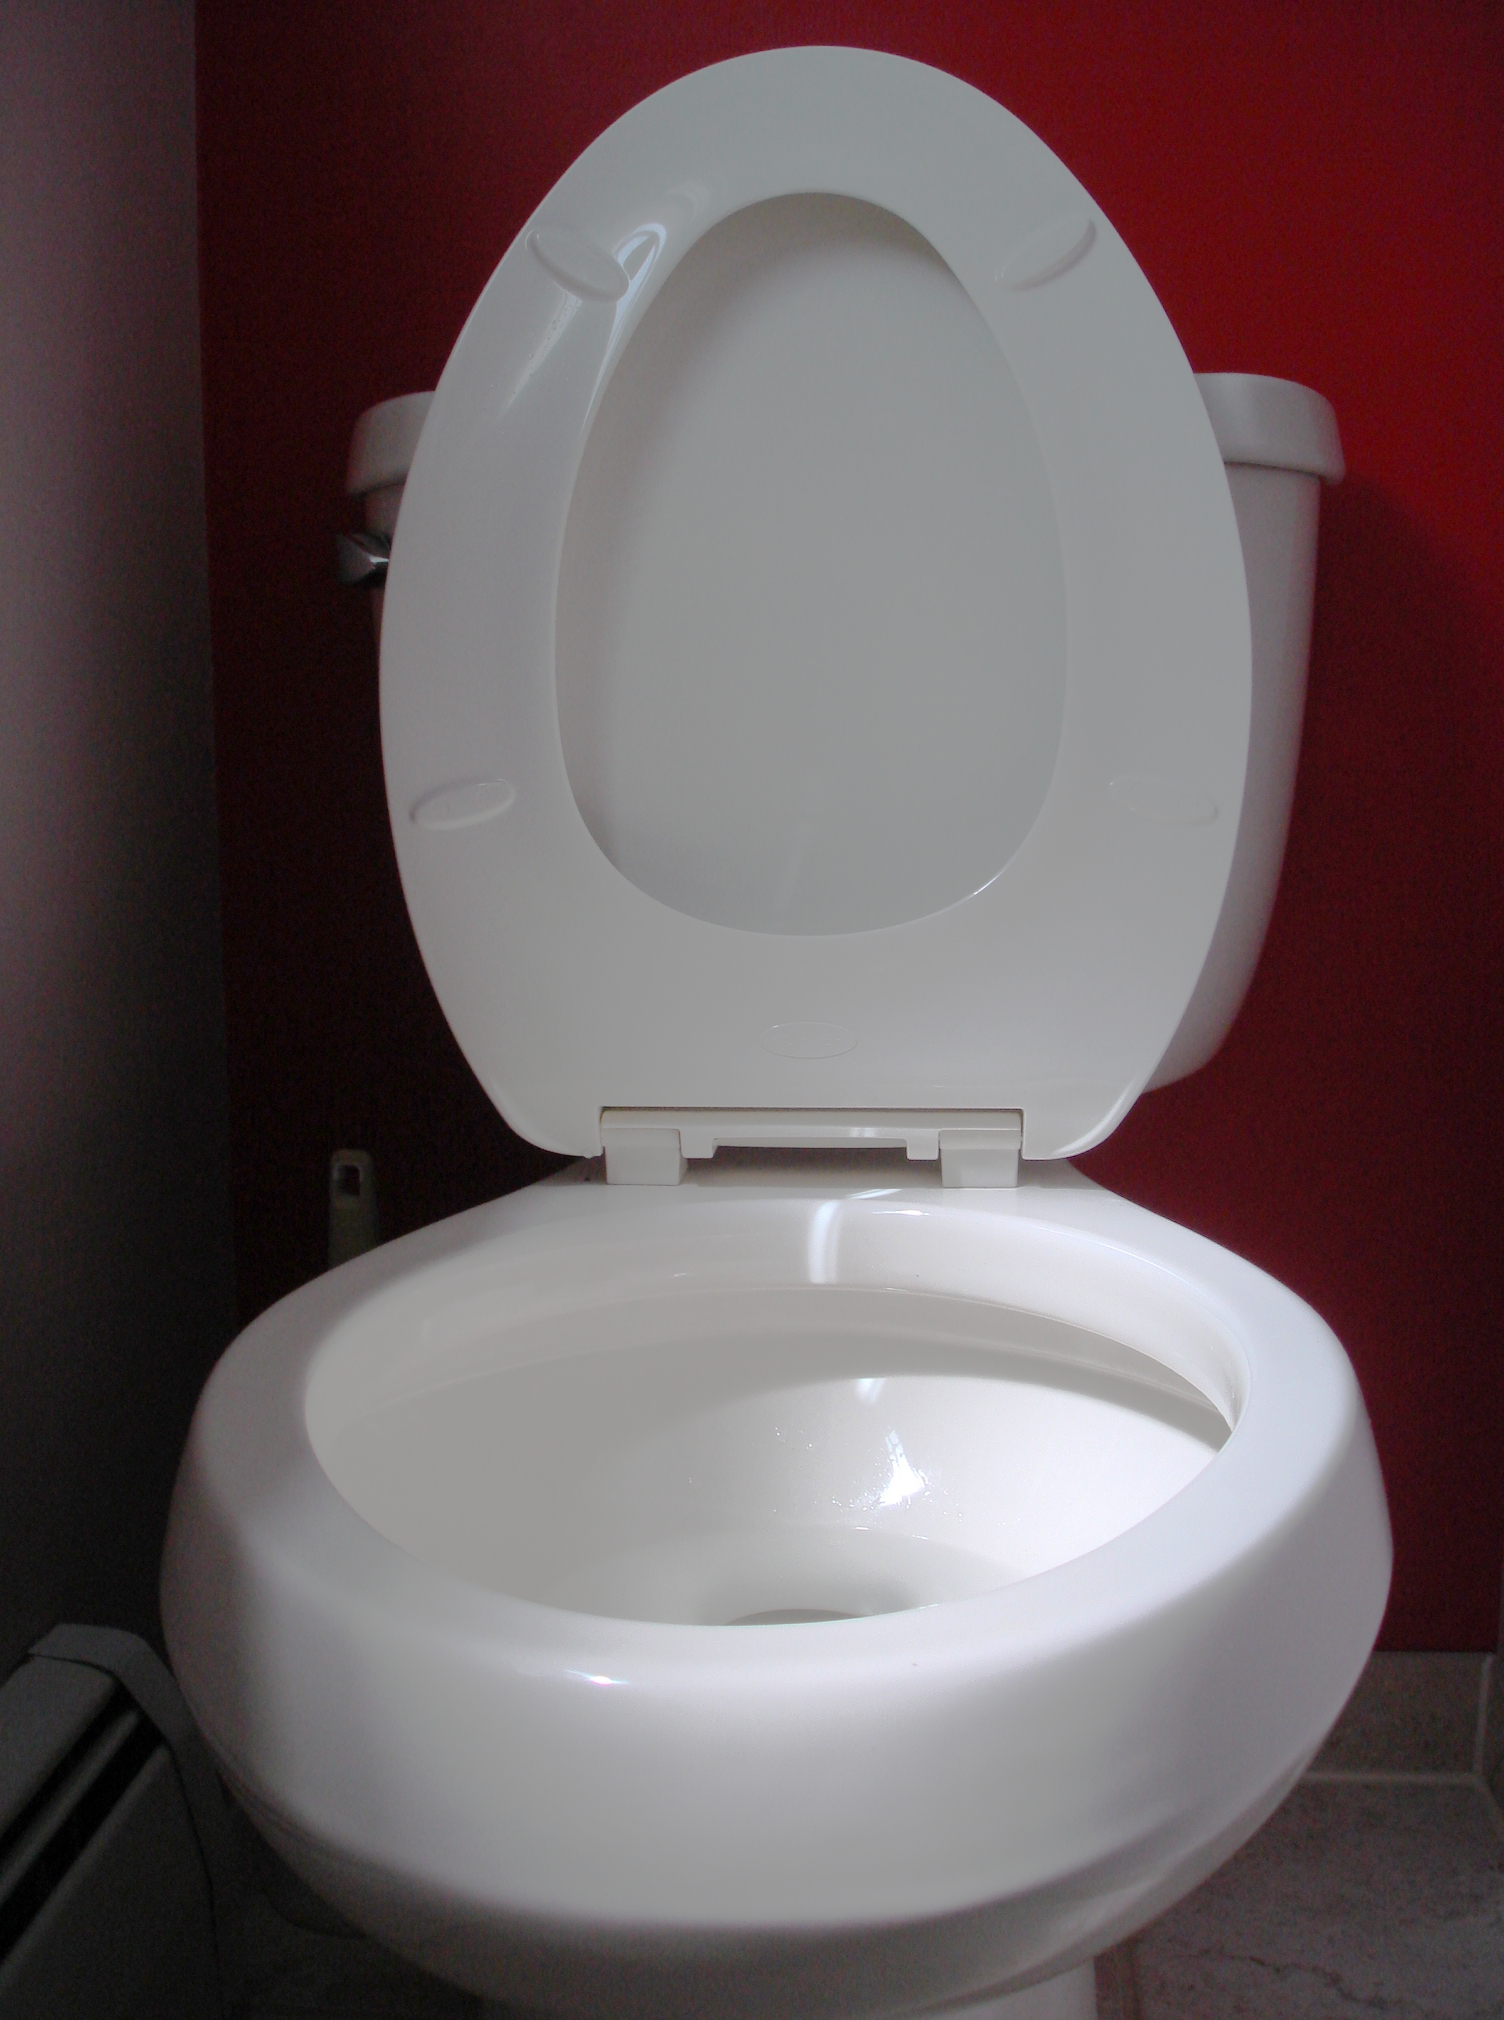 File:Toilet seat up.JPG